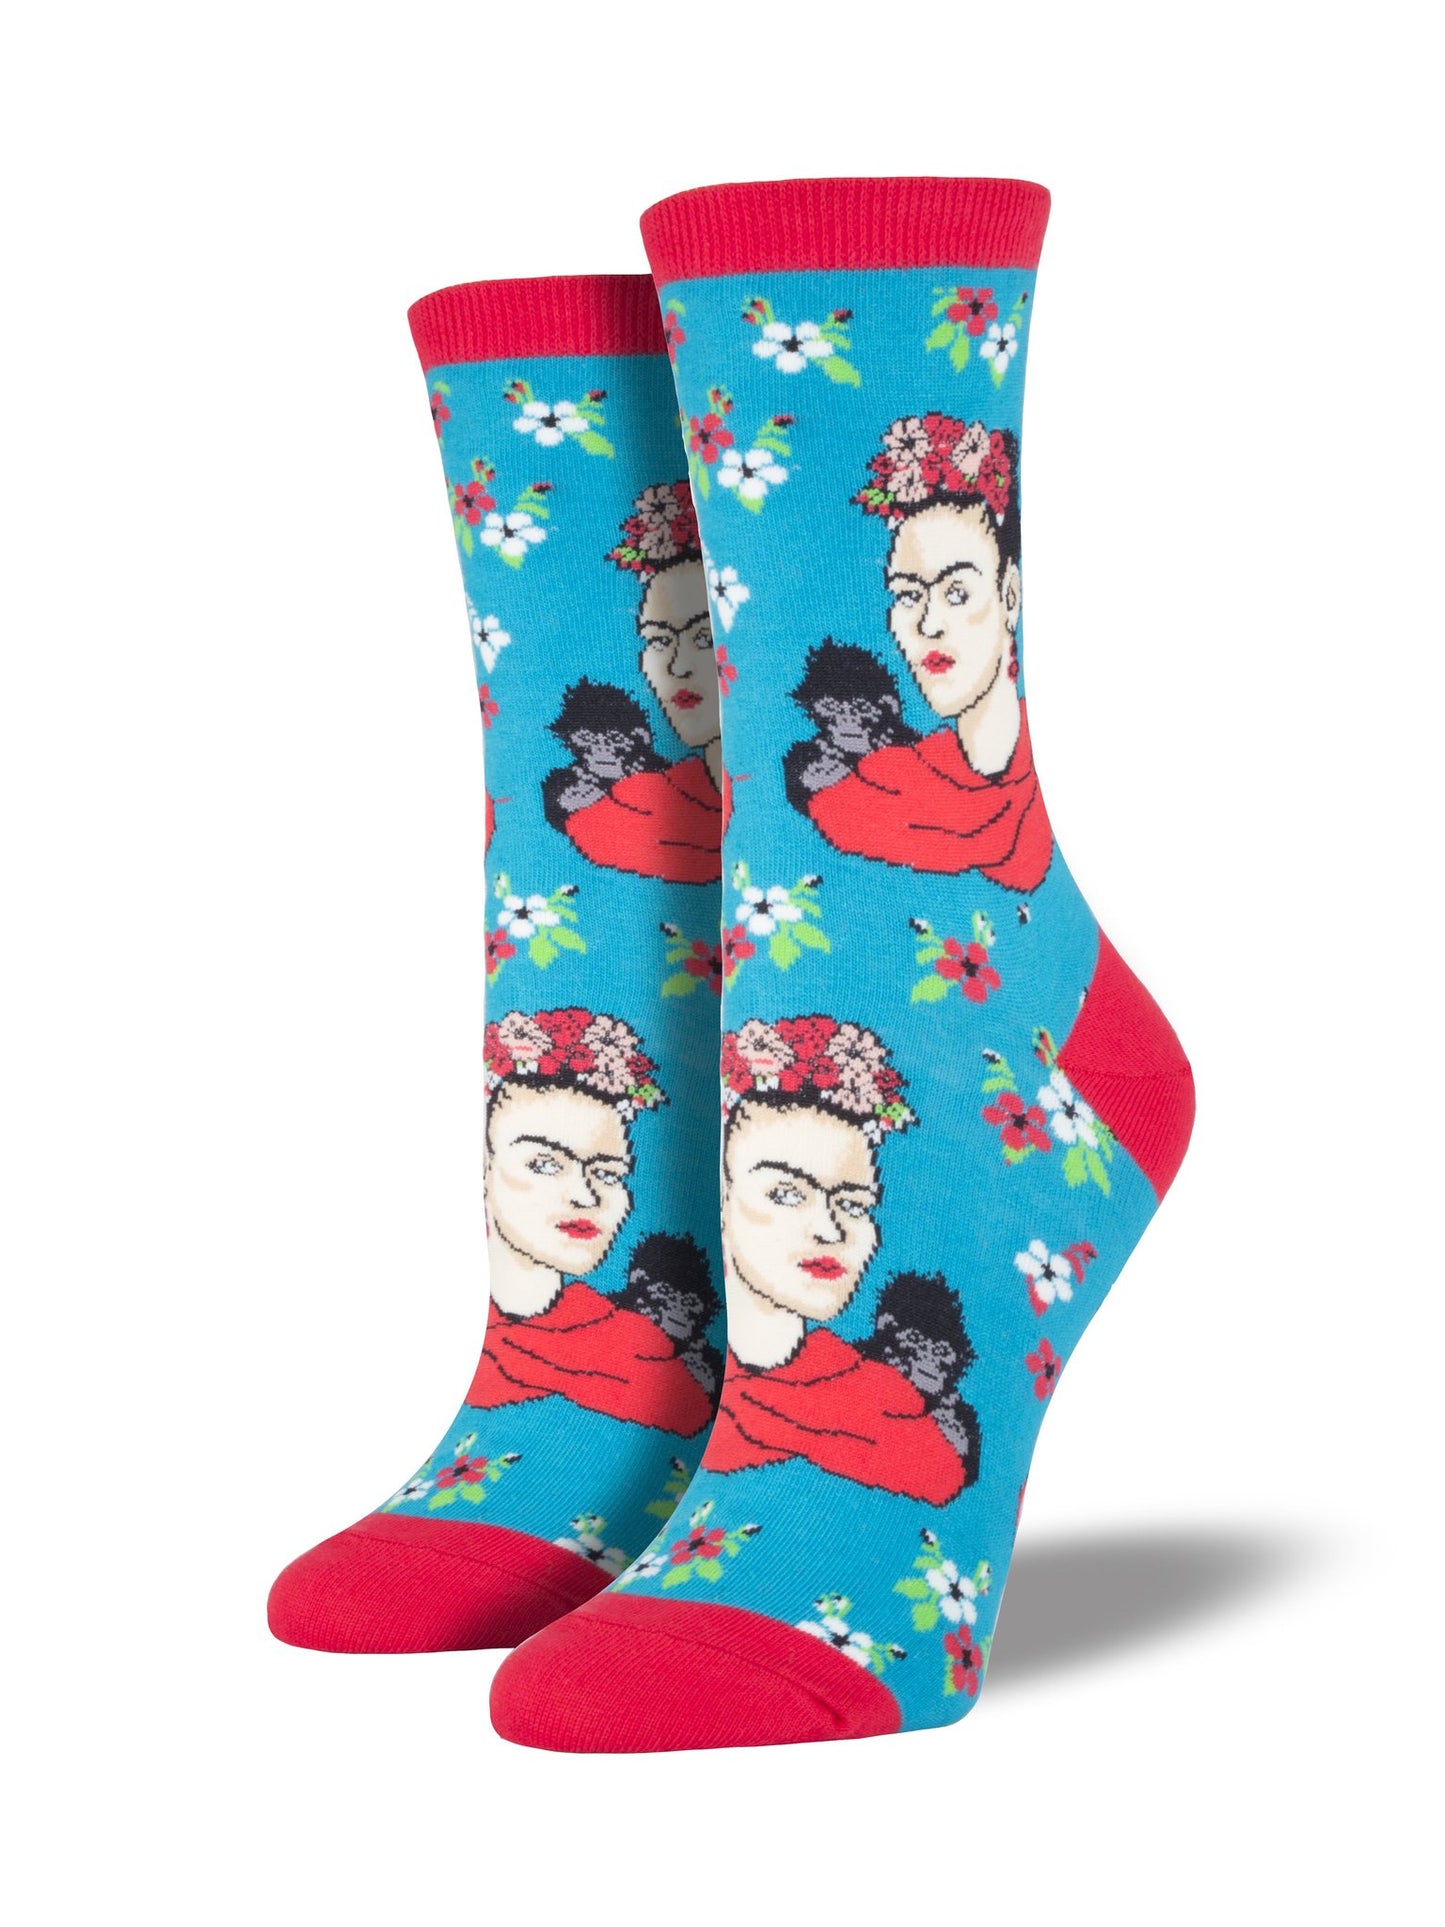 Frida Kahlo Women's Socks [2 Colors]